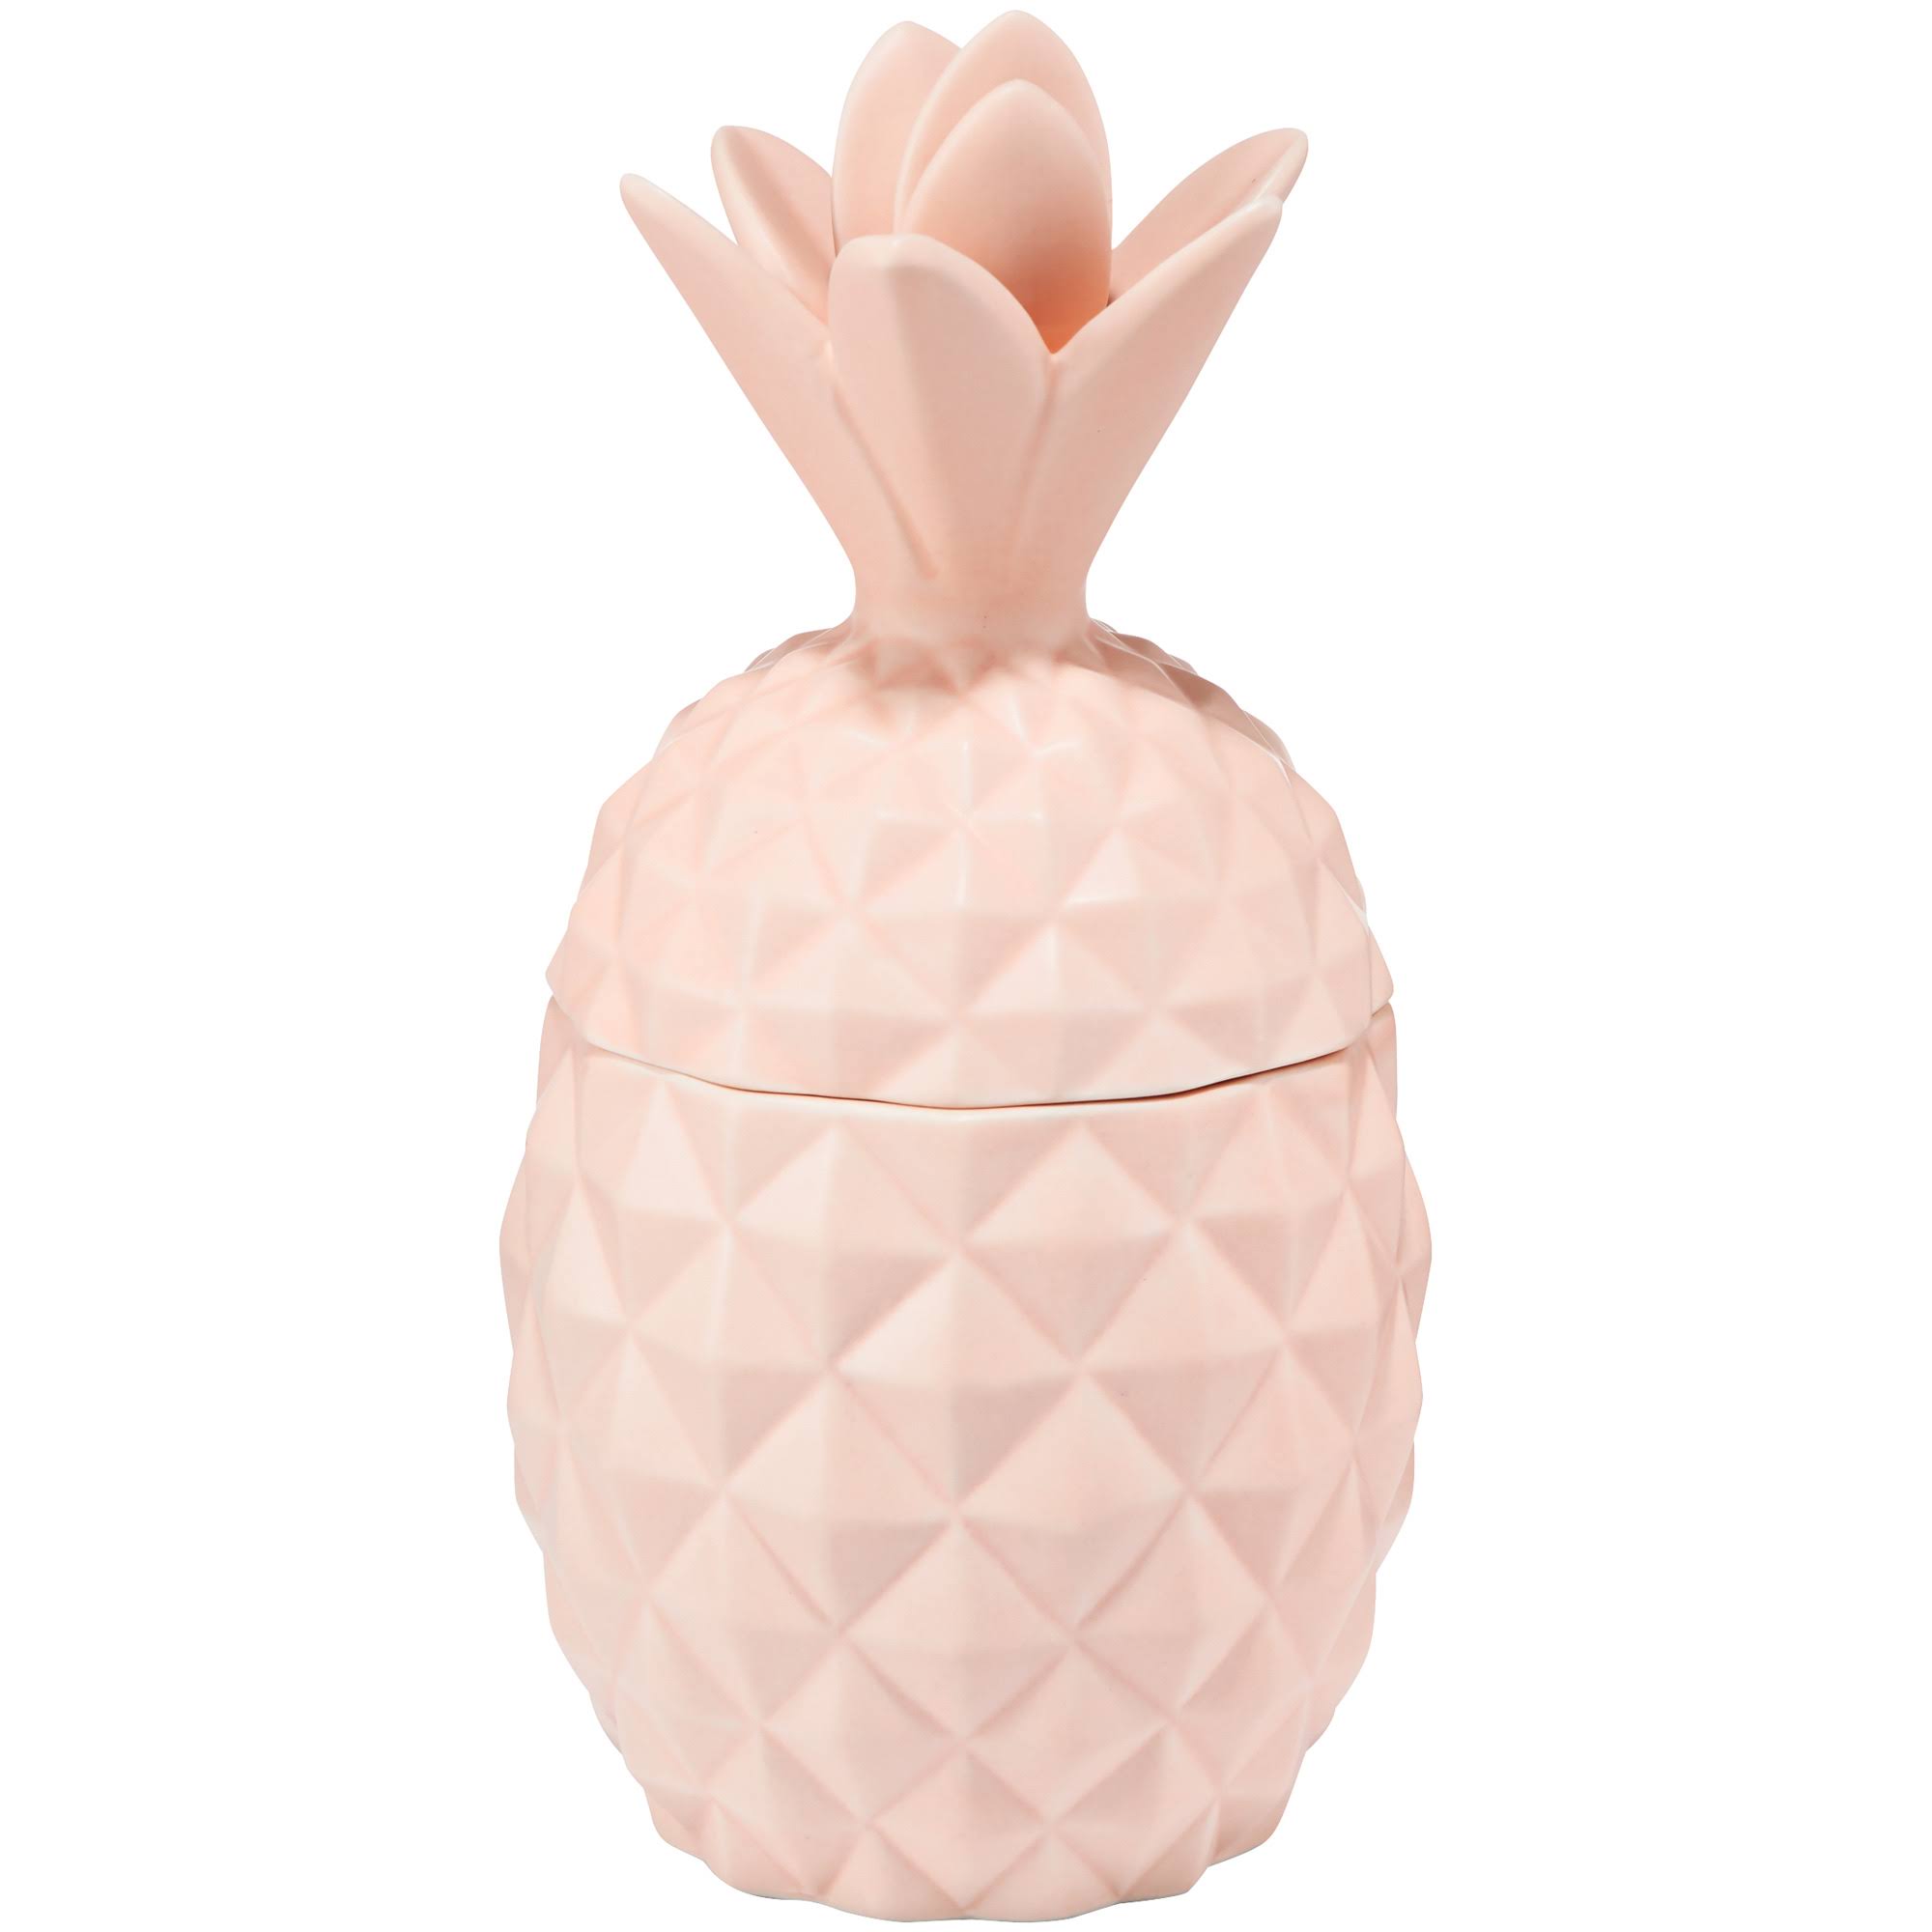 ILLUME Coconut Milk Mango Ceramic Pineapple Candle 9.8oz